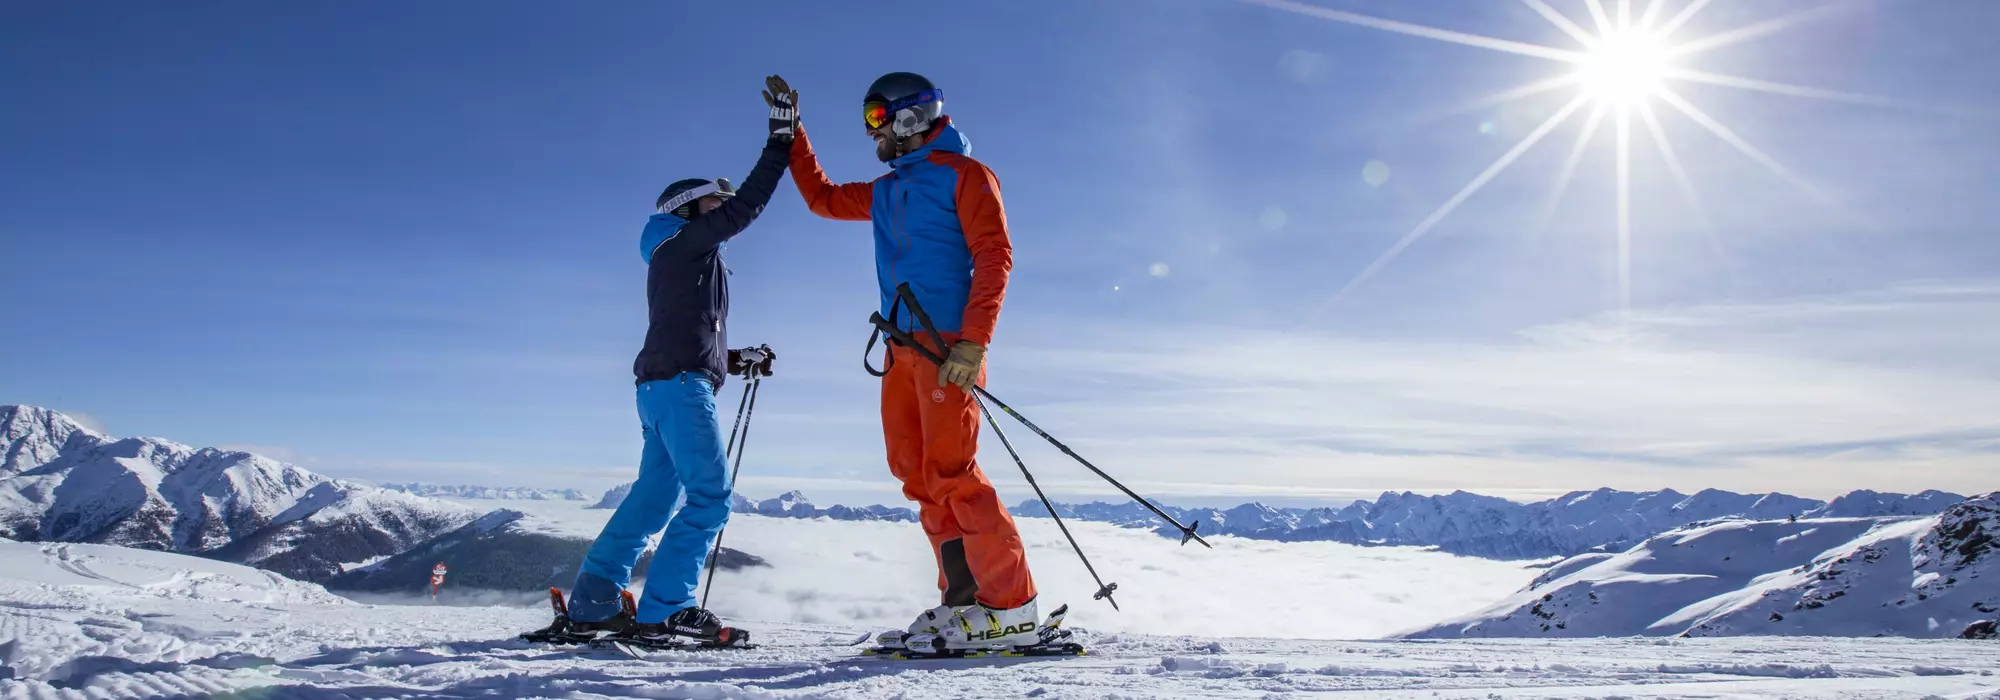 Skigenuss im Skizentrum Sillian-Hochpustertal © TVB Osttirol / Berg im Bild OG